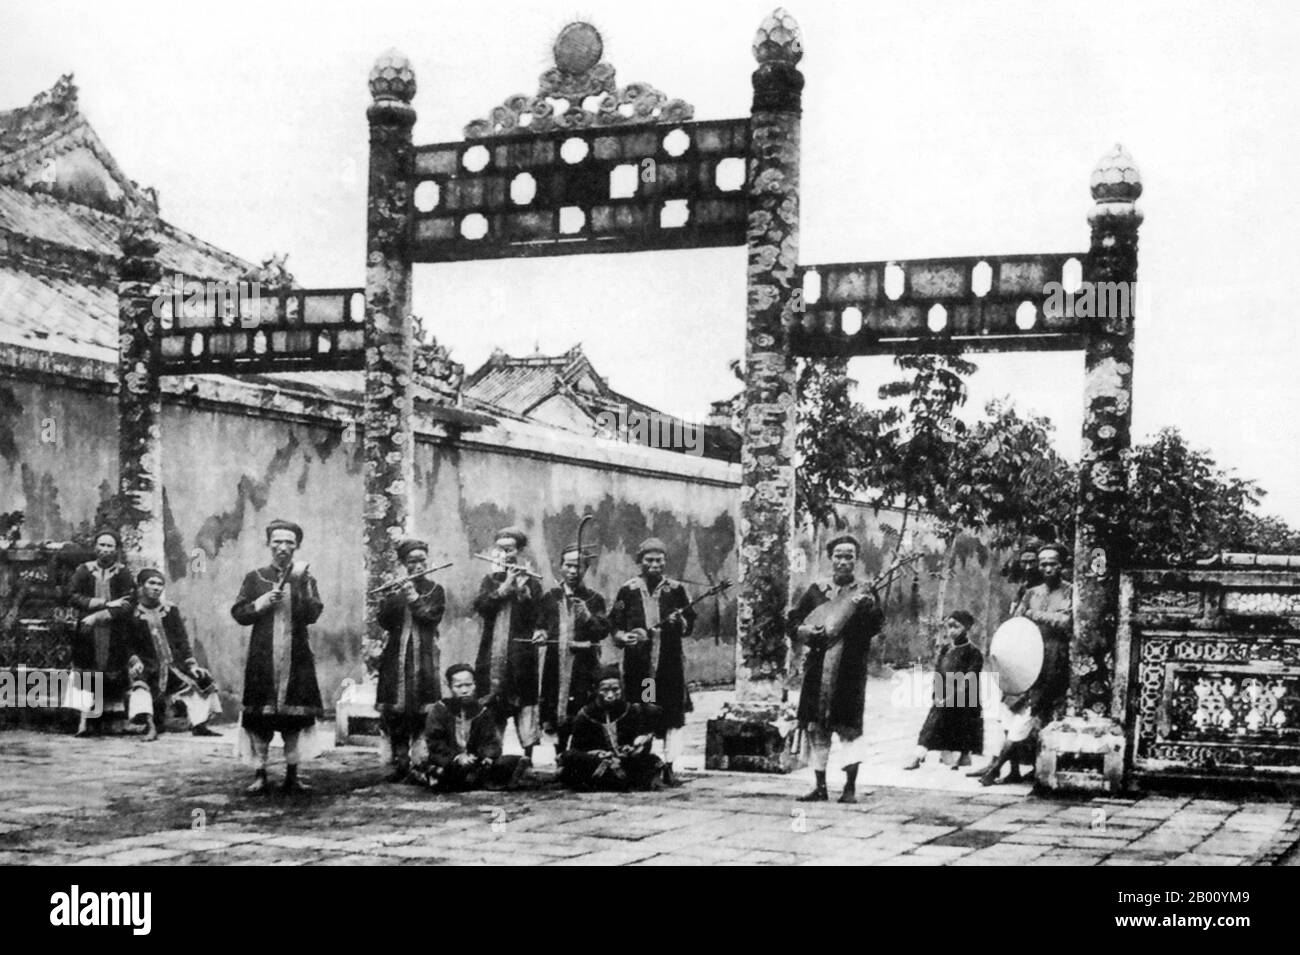 Vietnam: Ein königliches Orchester, Imperial City, Hue (Anfang 20th Jahrhundert). Zwischen 1802 und 1945 war Hue die kaiserliche Hauptstadt der Nguyen-Dynastie, einem feudalen Königreich, das einen Großteil des südlichen Vietnams vom 17th. Bis zum 19th. Jahrhundert dominierte. Im Jahr 1775, als Trinh Sam es einfing, wurde es als Phu Xuan bekannt. Im Jahr 1802 gelang es Nguyen Phuc Anh (später Kaiser Gia Long), seine Kontrolle über ganz Vietnam zu etablieren und machte Hue zur nationalen Hauptstadt bis 1945, als Kaiser Bao Dai abdankte und eine kommunistische Regierung in Hanoi gegründet wurde. Stockfoto